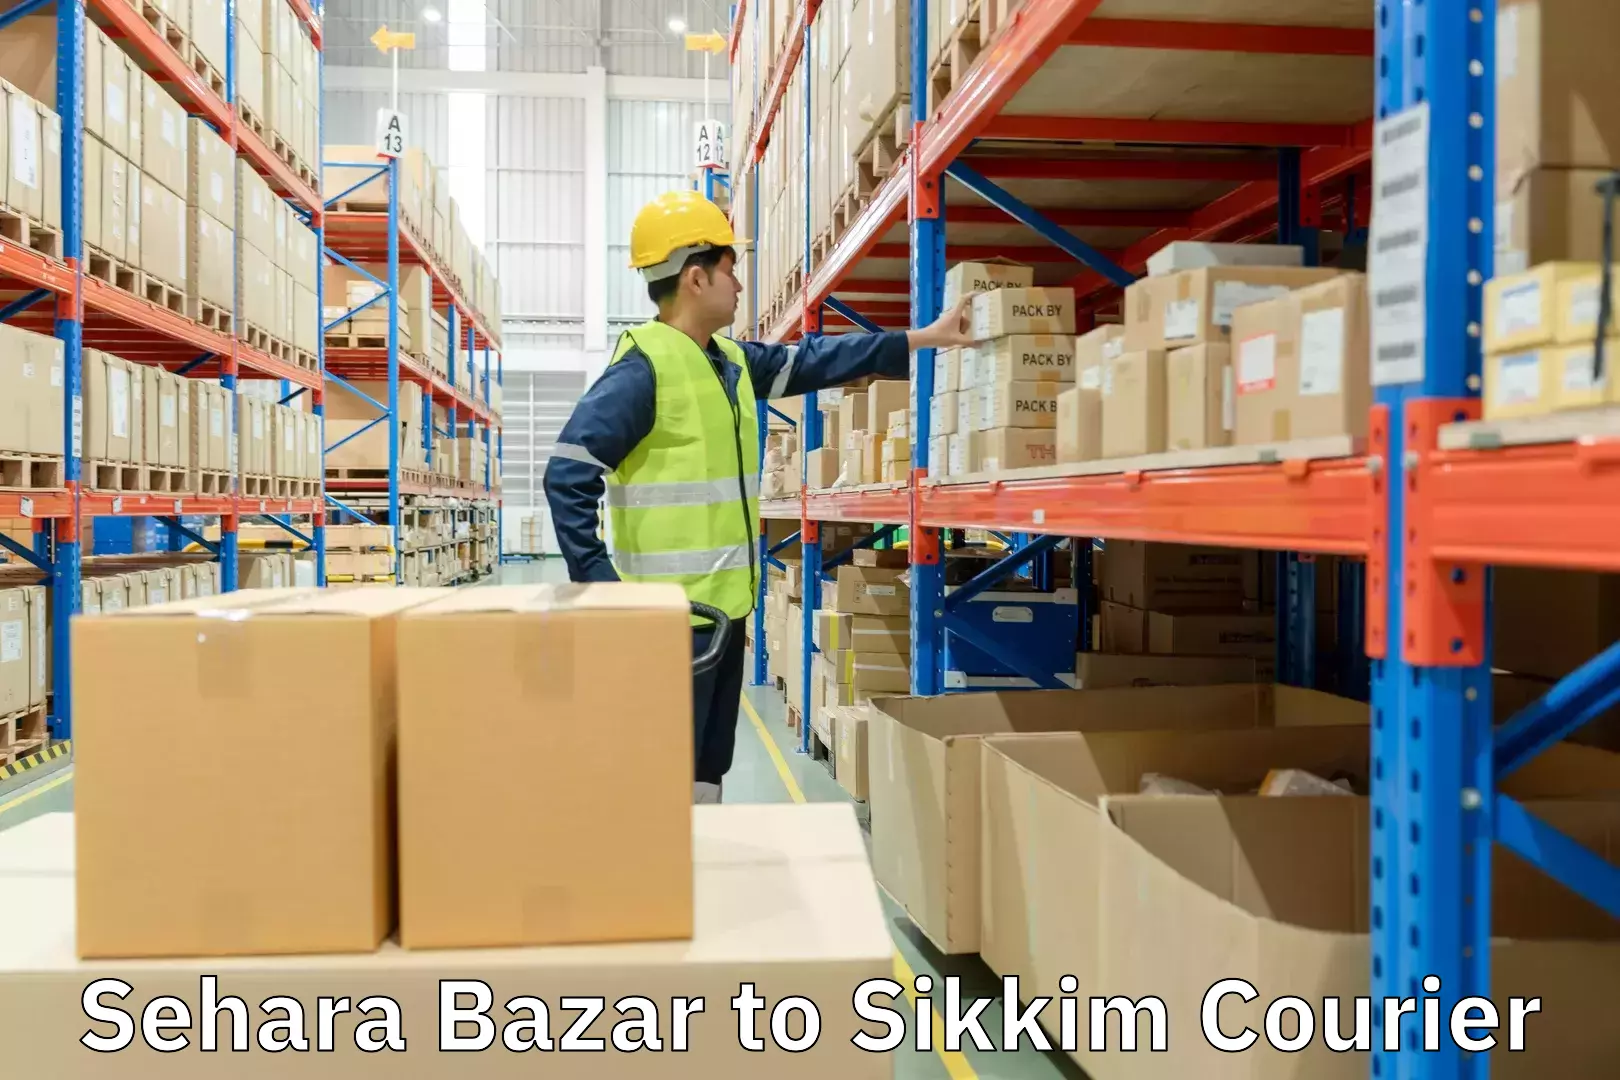 Comprehensive logistics Sehara Bazar to Sikkim